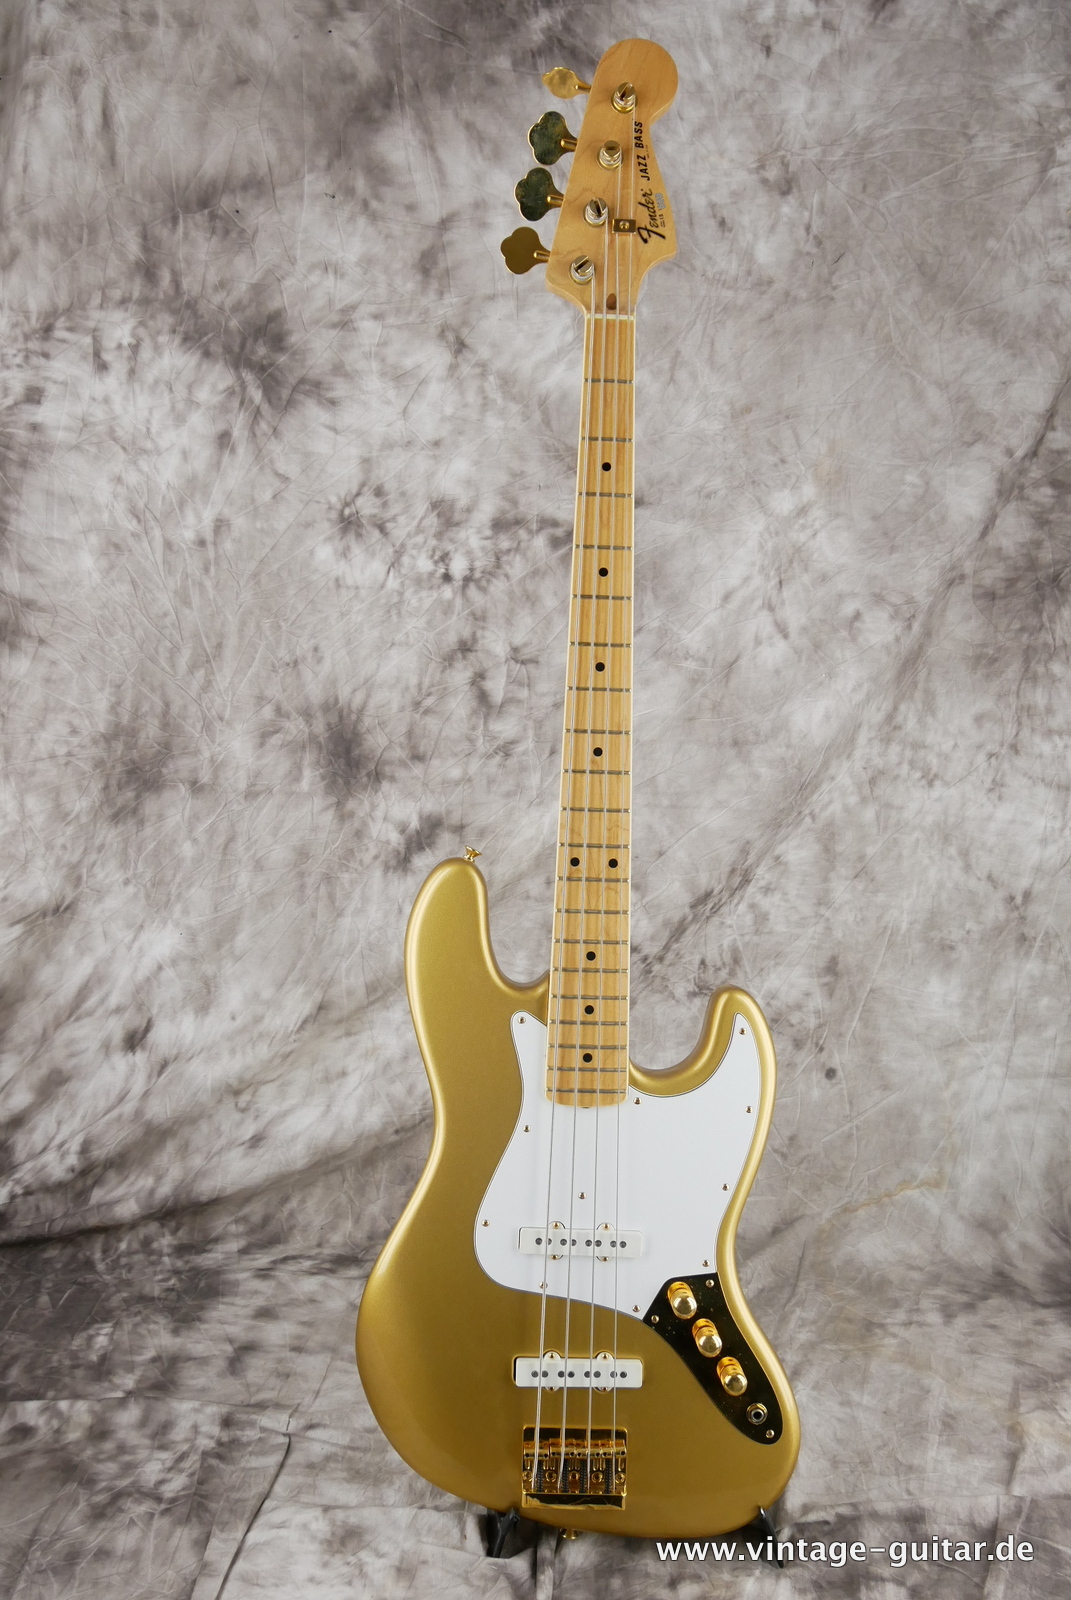 Fender_Jazz_Bass_collectors_series_USA_gold_metallic_1982-001.JPG